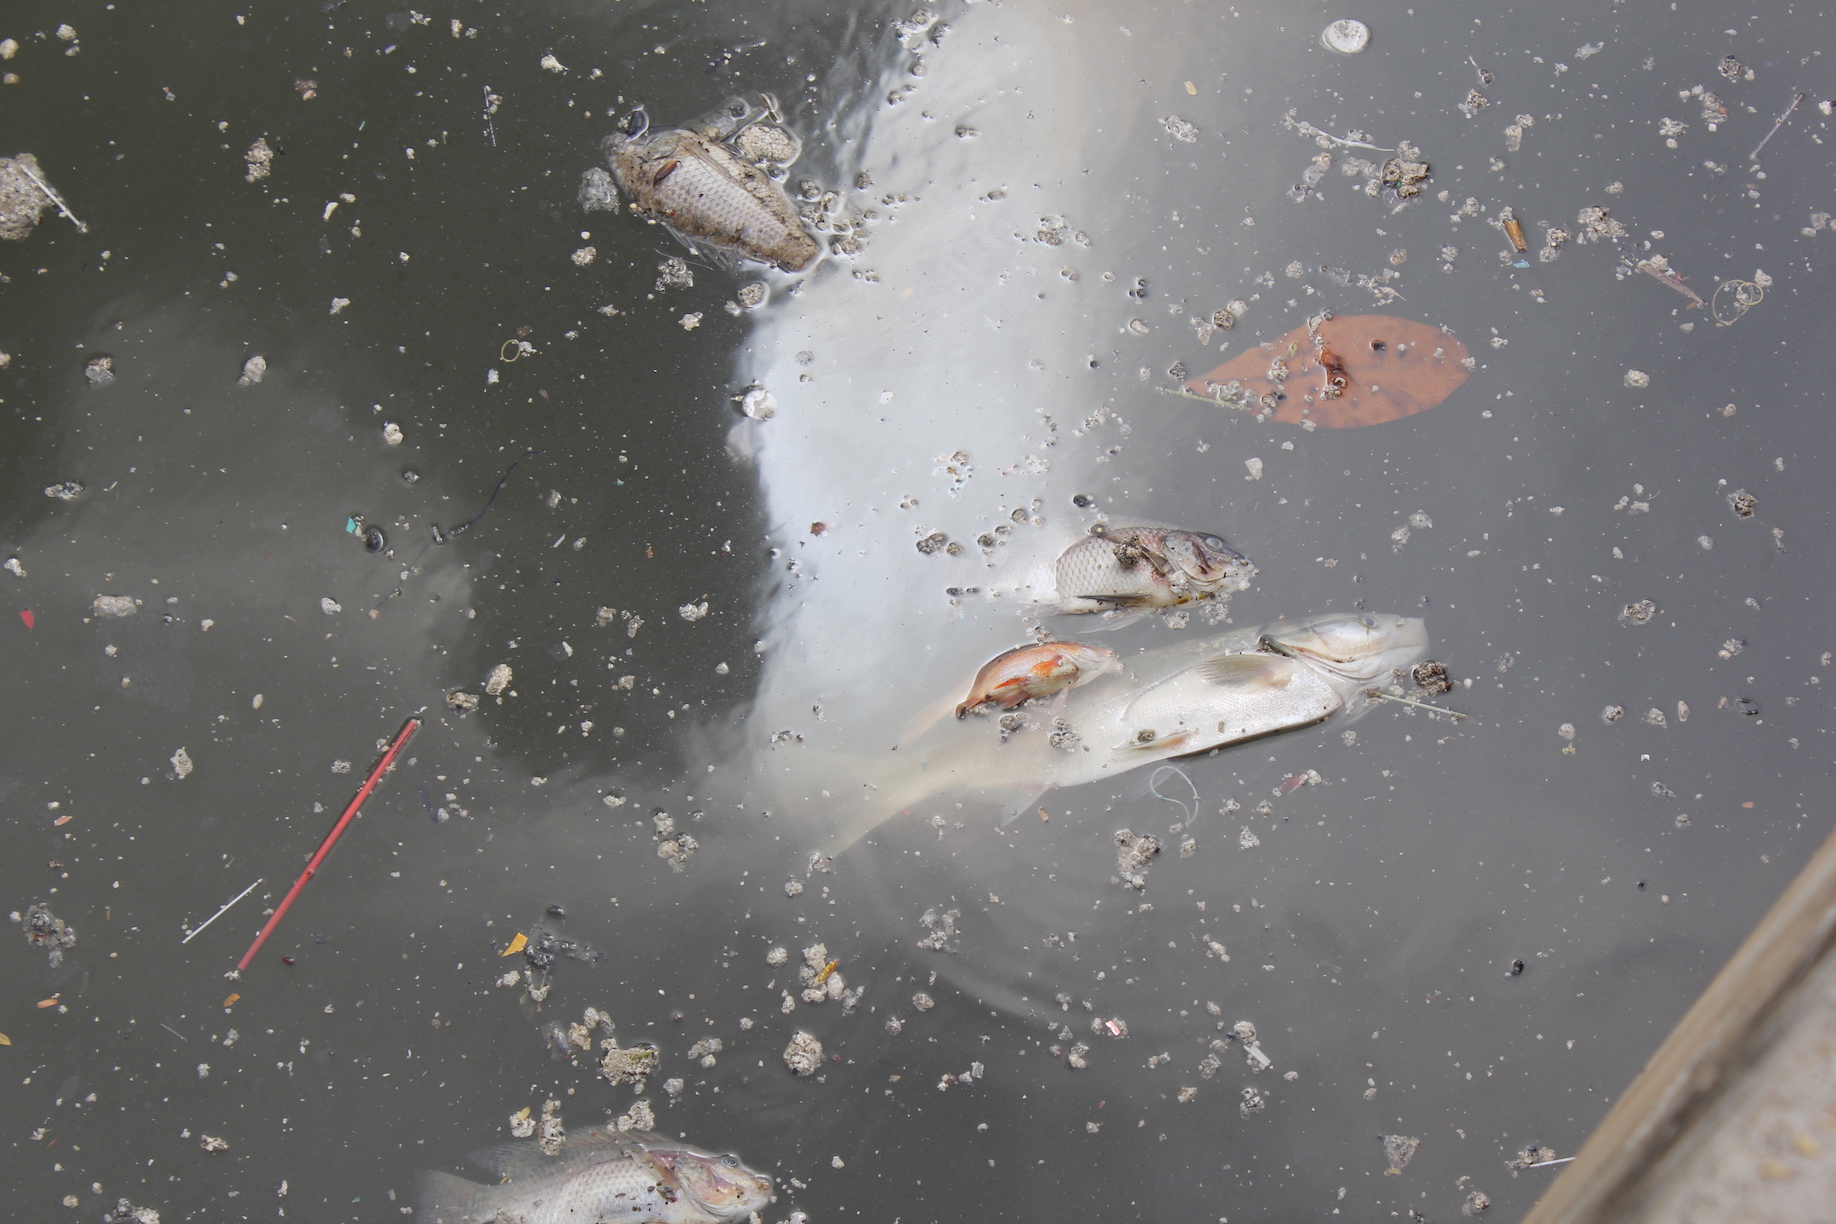 Nhiều loại cá lớn nằm ngữa bụng chết trên mặt nước